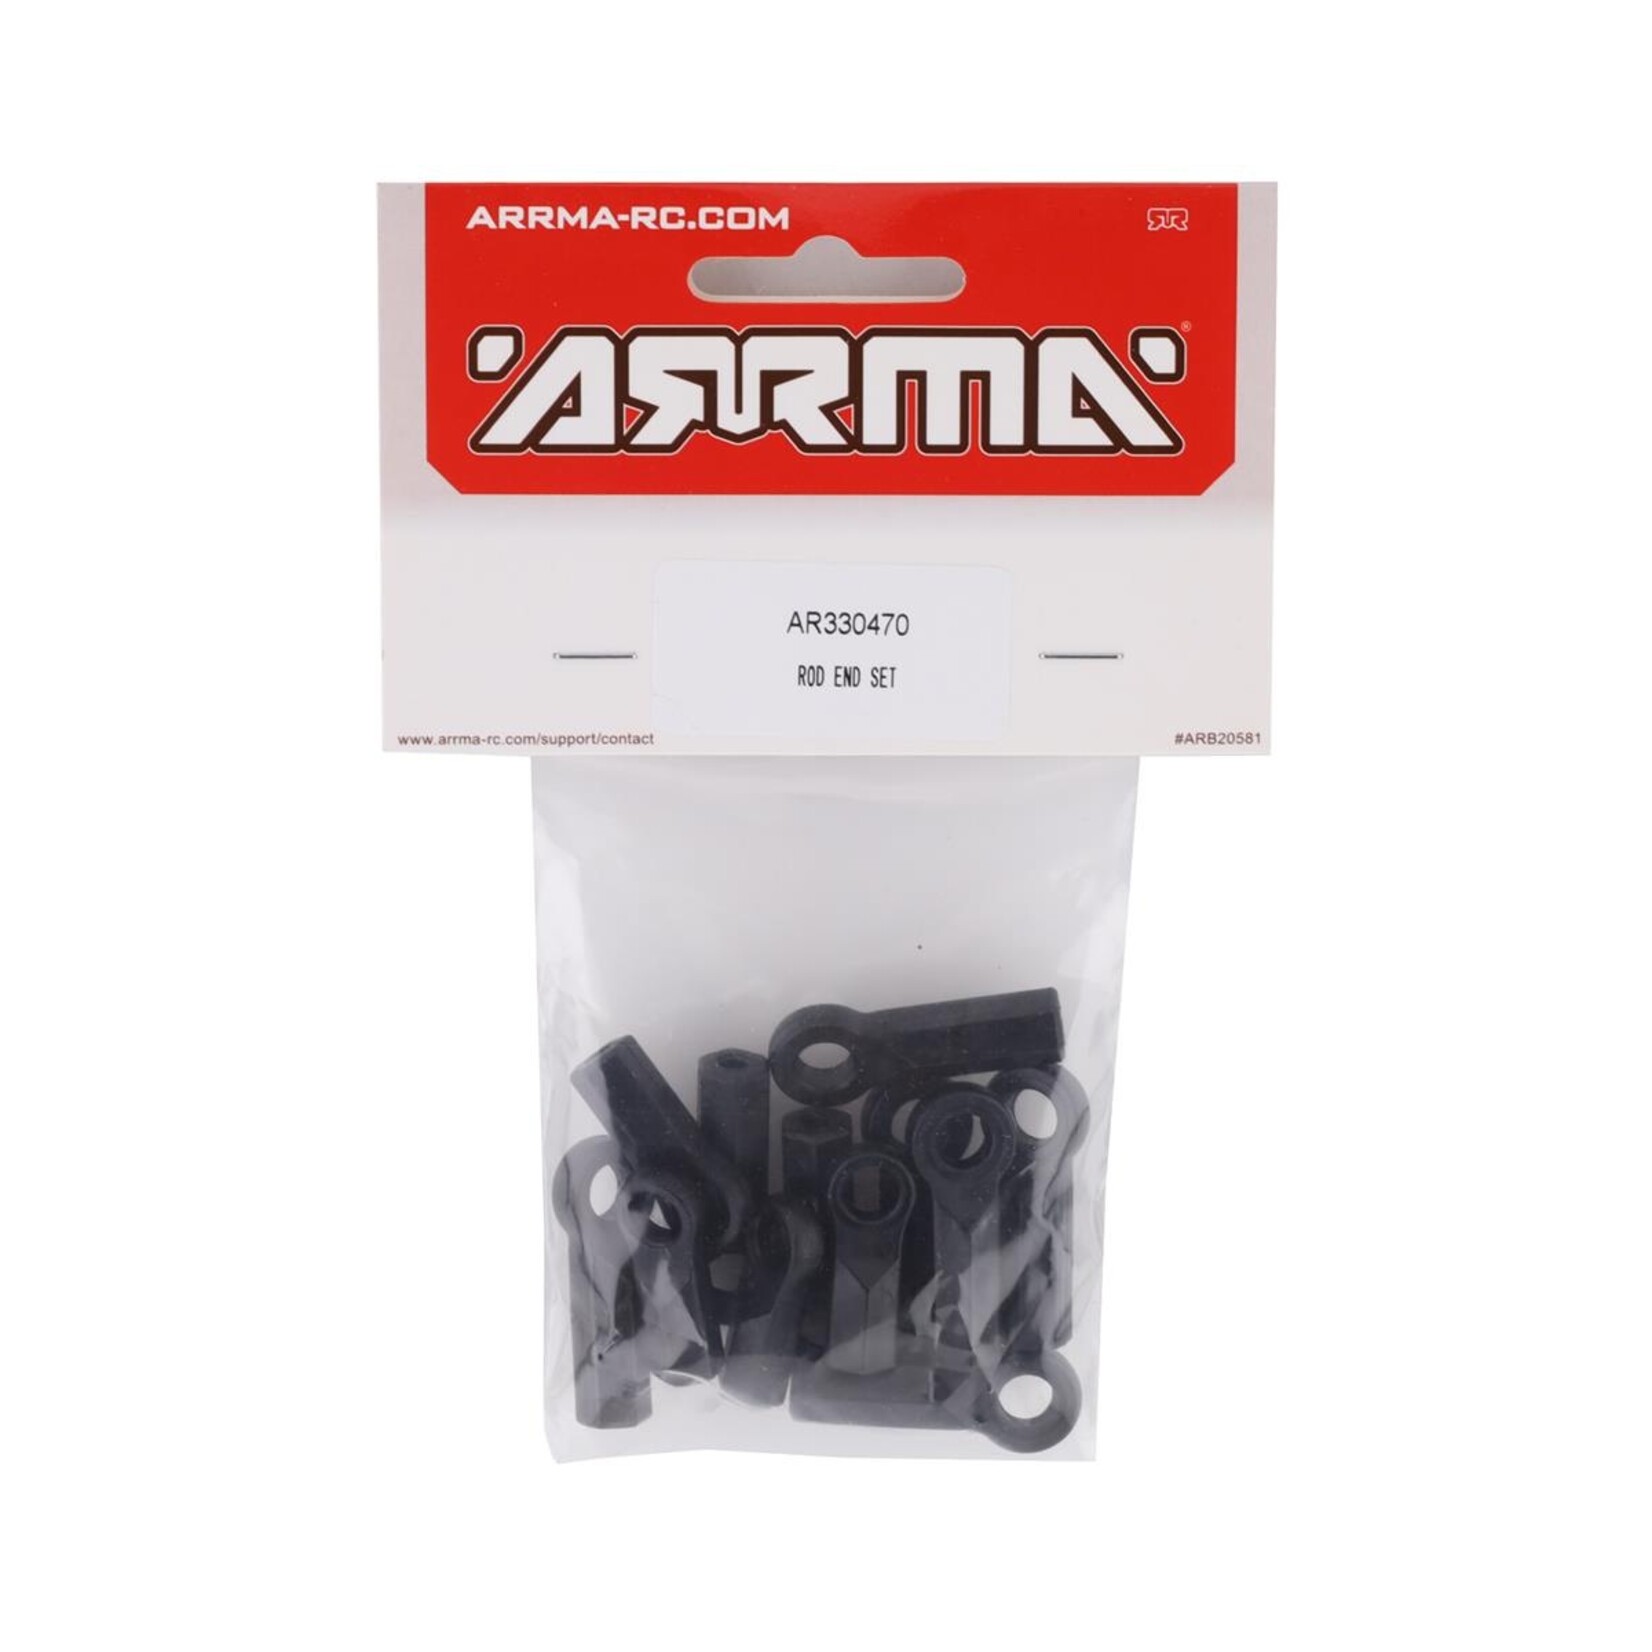 ARRMA Arrma 4x4 Rod End Set #AR330470